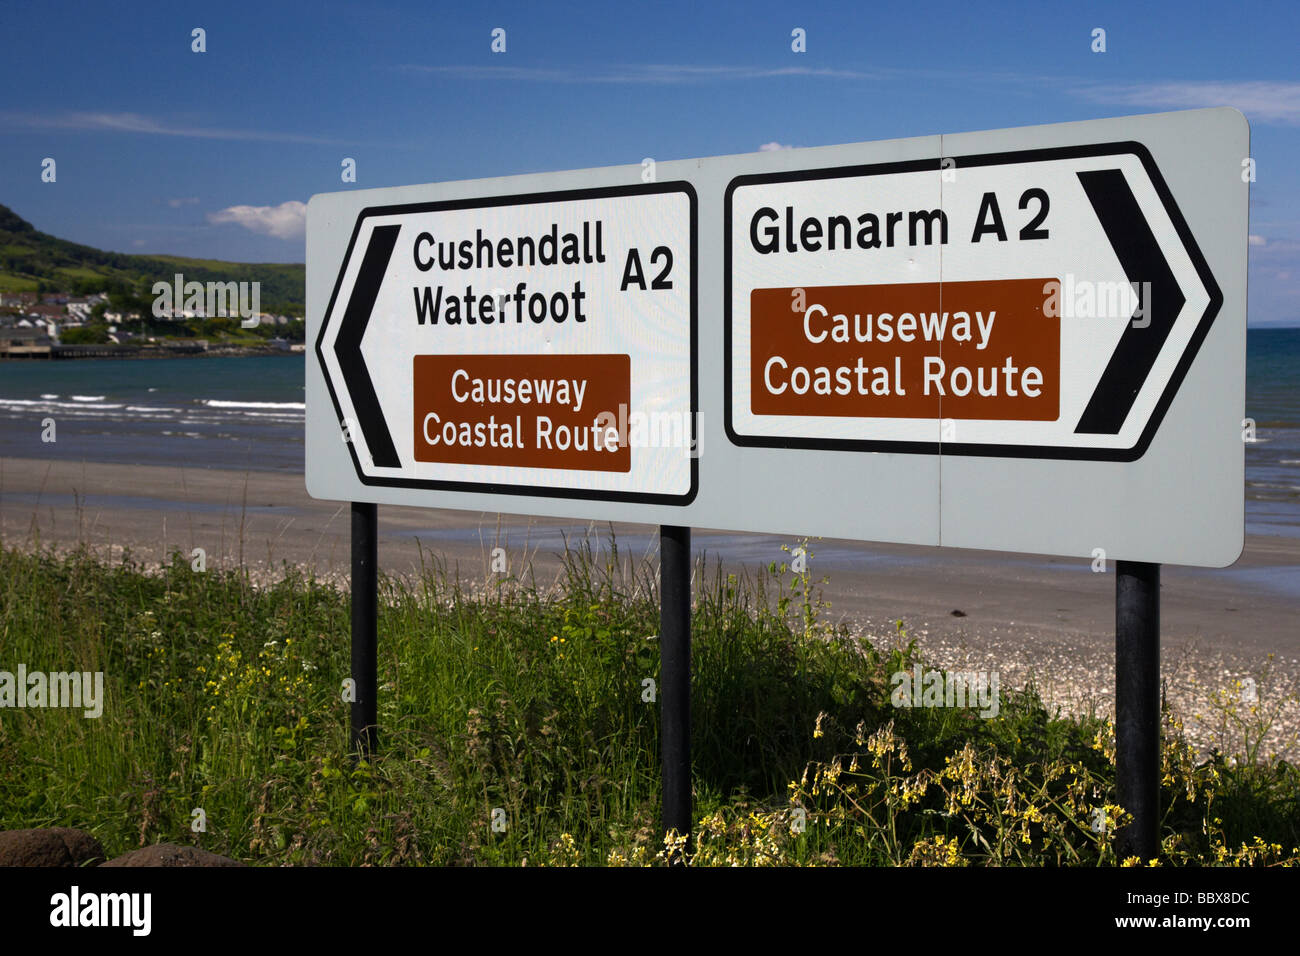 Wegweiser für das Causeway Coastal Route in gourock zwischen Cushendall und glenarm County Antrim Coast Road A2 ni Stockfoto